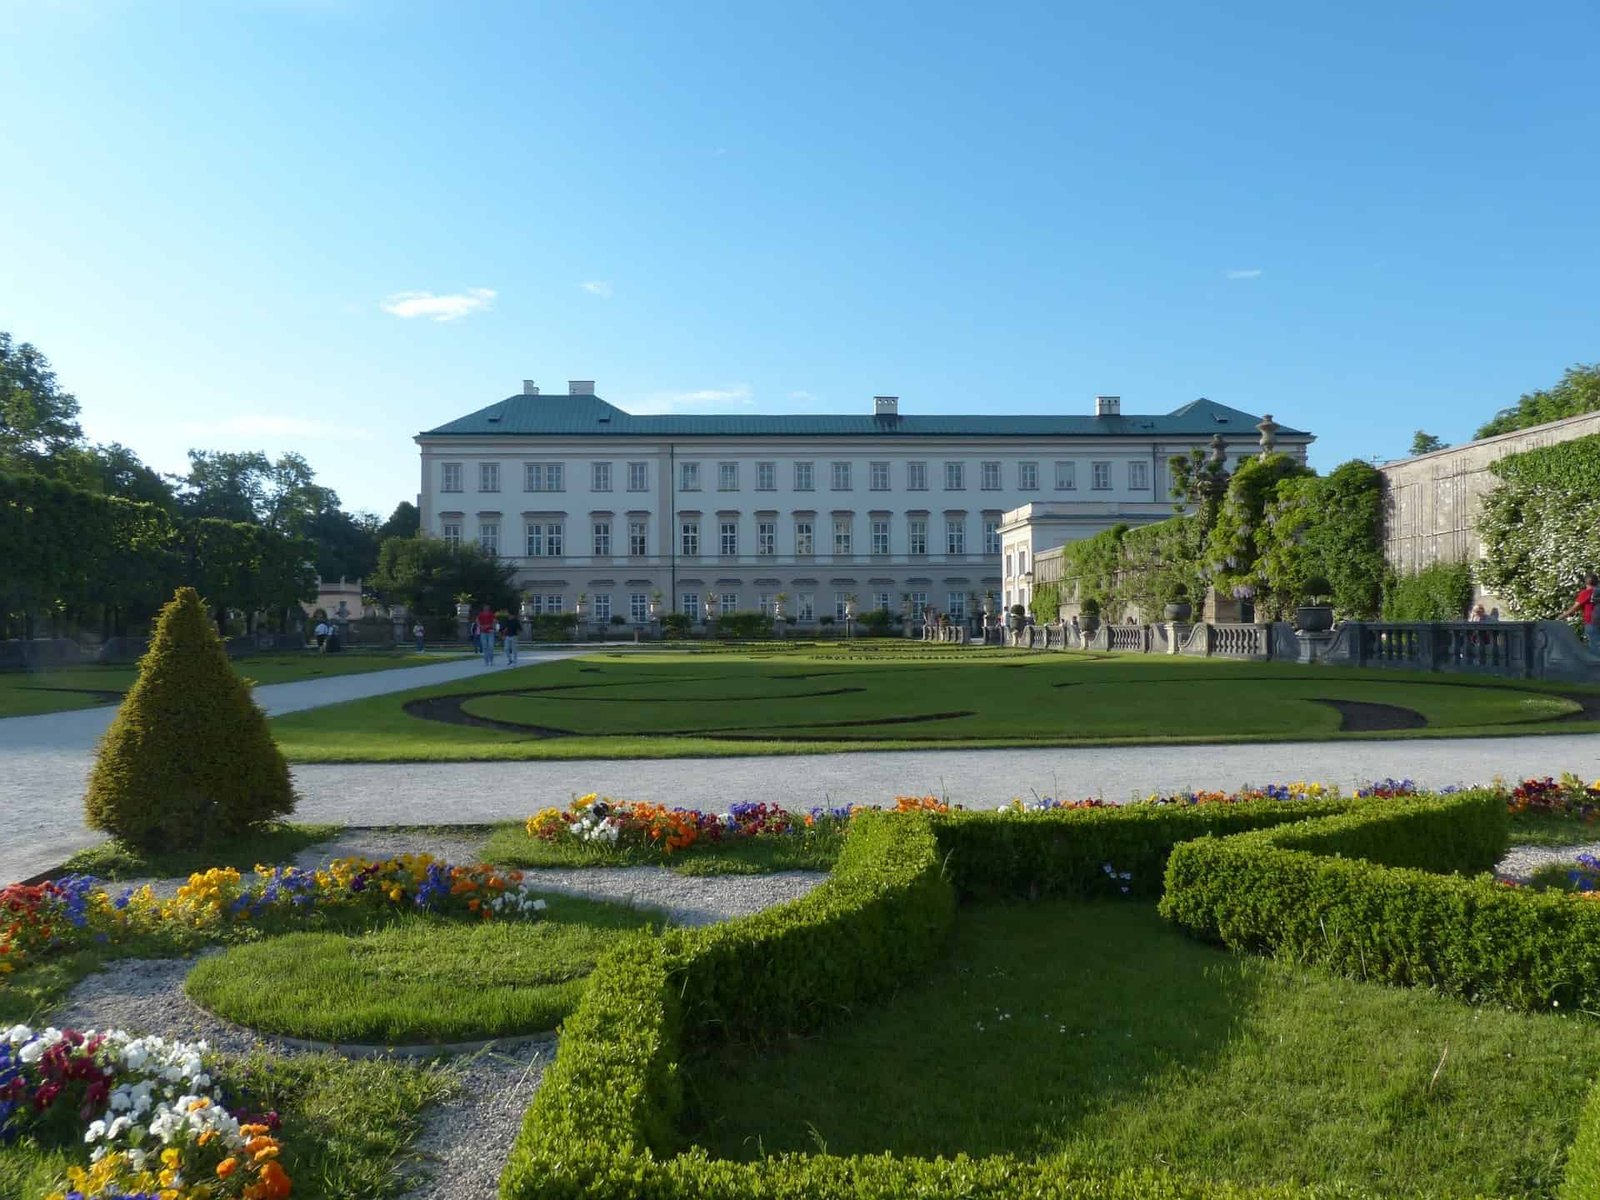 Mirabell Palace Salzburg